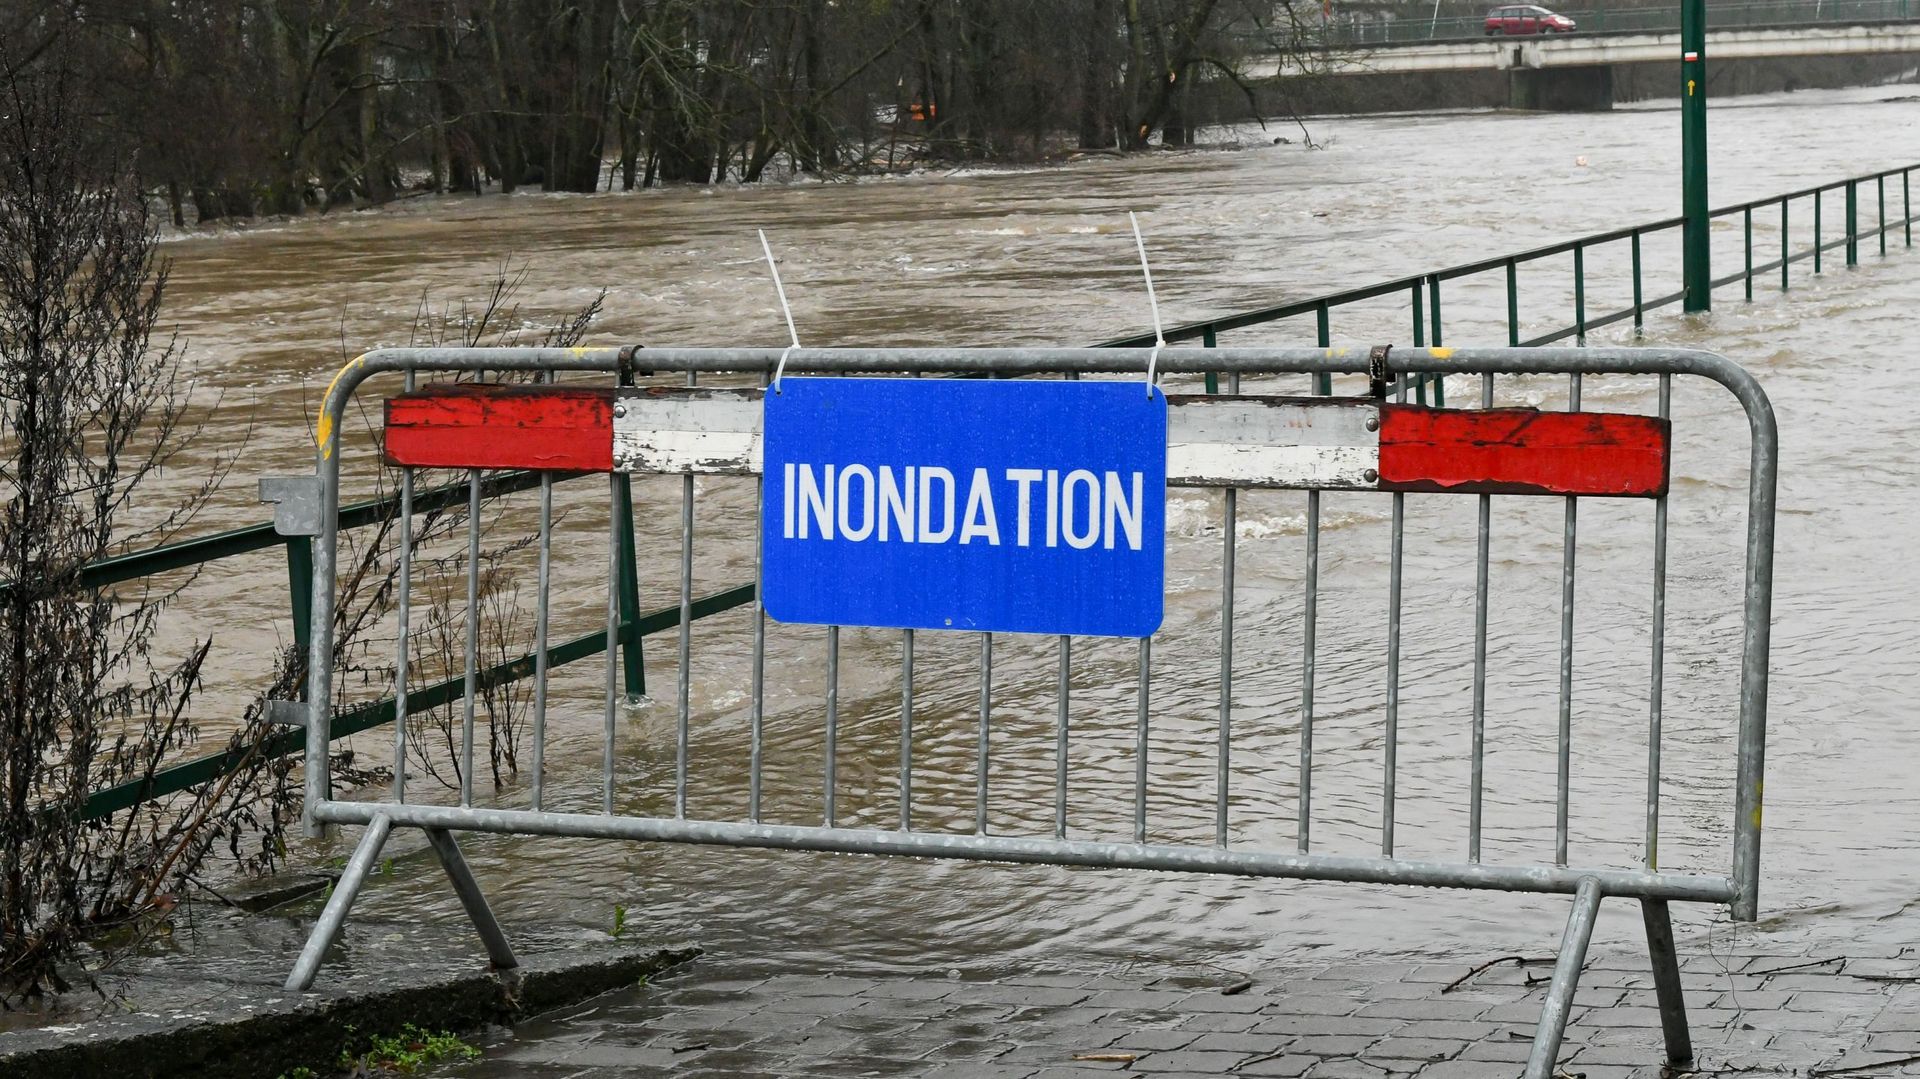 Inondations : le gouvernement wallon dégage 166 millions pour la réparation des routes, ponts et voies hydrauliques